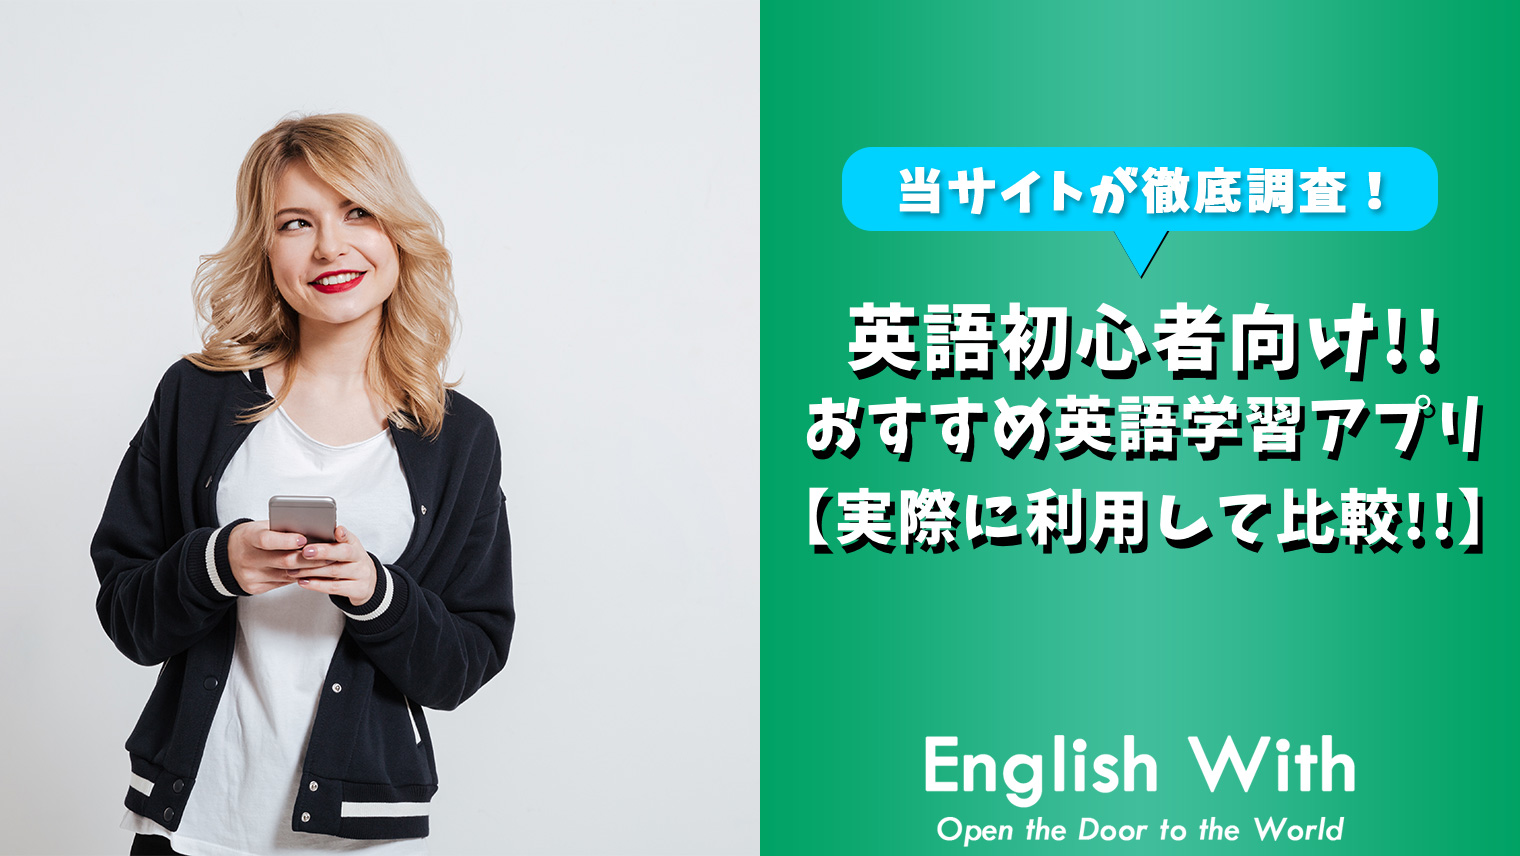 英会話初心者でも始めやすい おすすめ英語学習アプリを紹介 7選 おすすめ英会話 英語学習の比較 ランキング English With